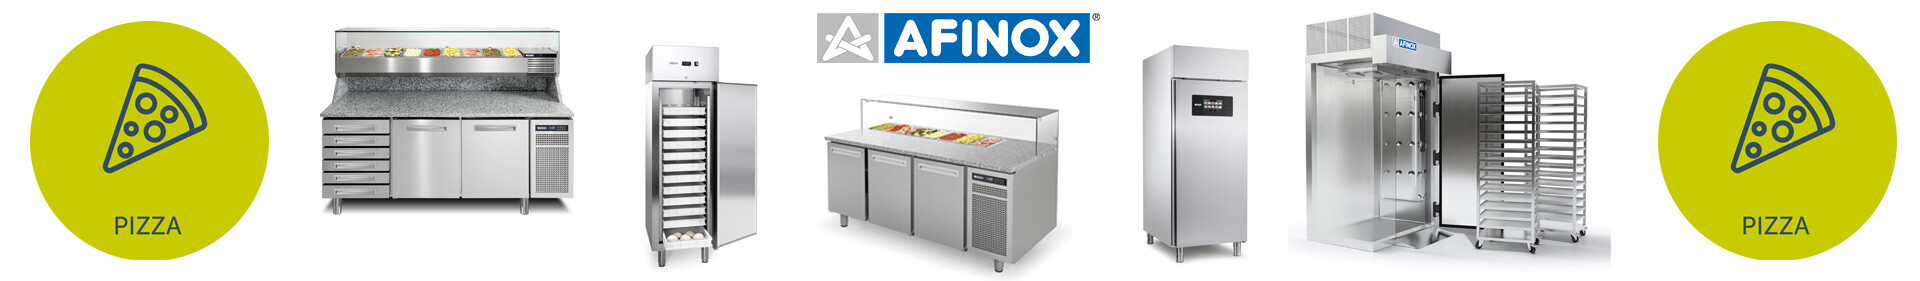 Afinox - Simple